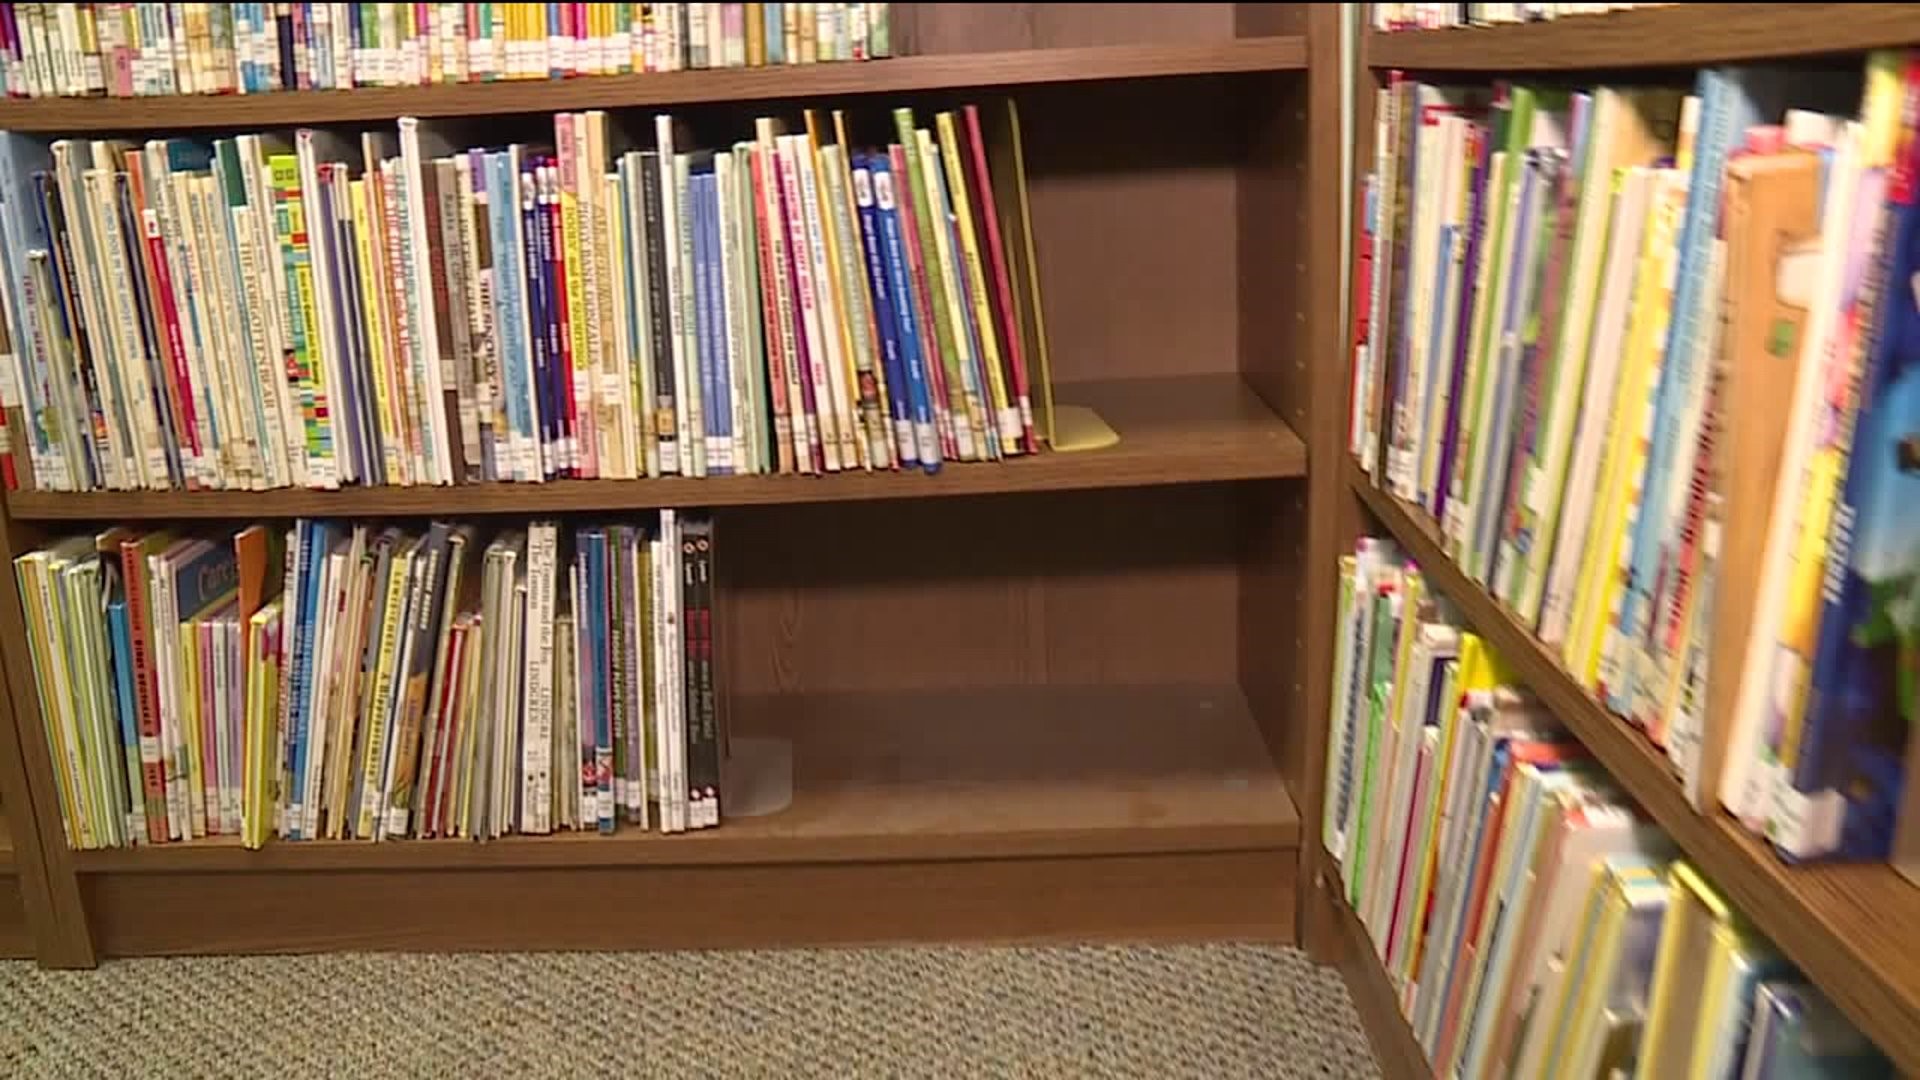 Ashland Library Seeking Donations for Flooding Damage